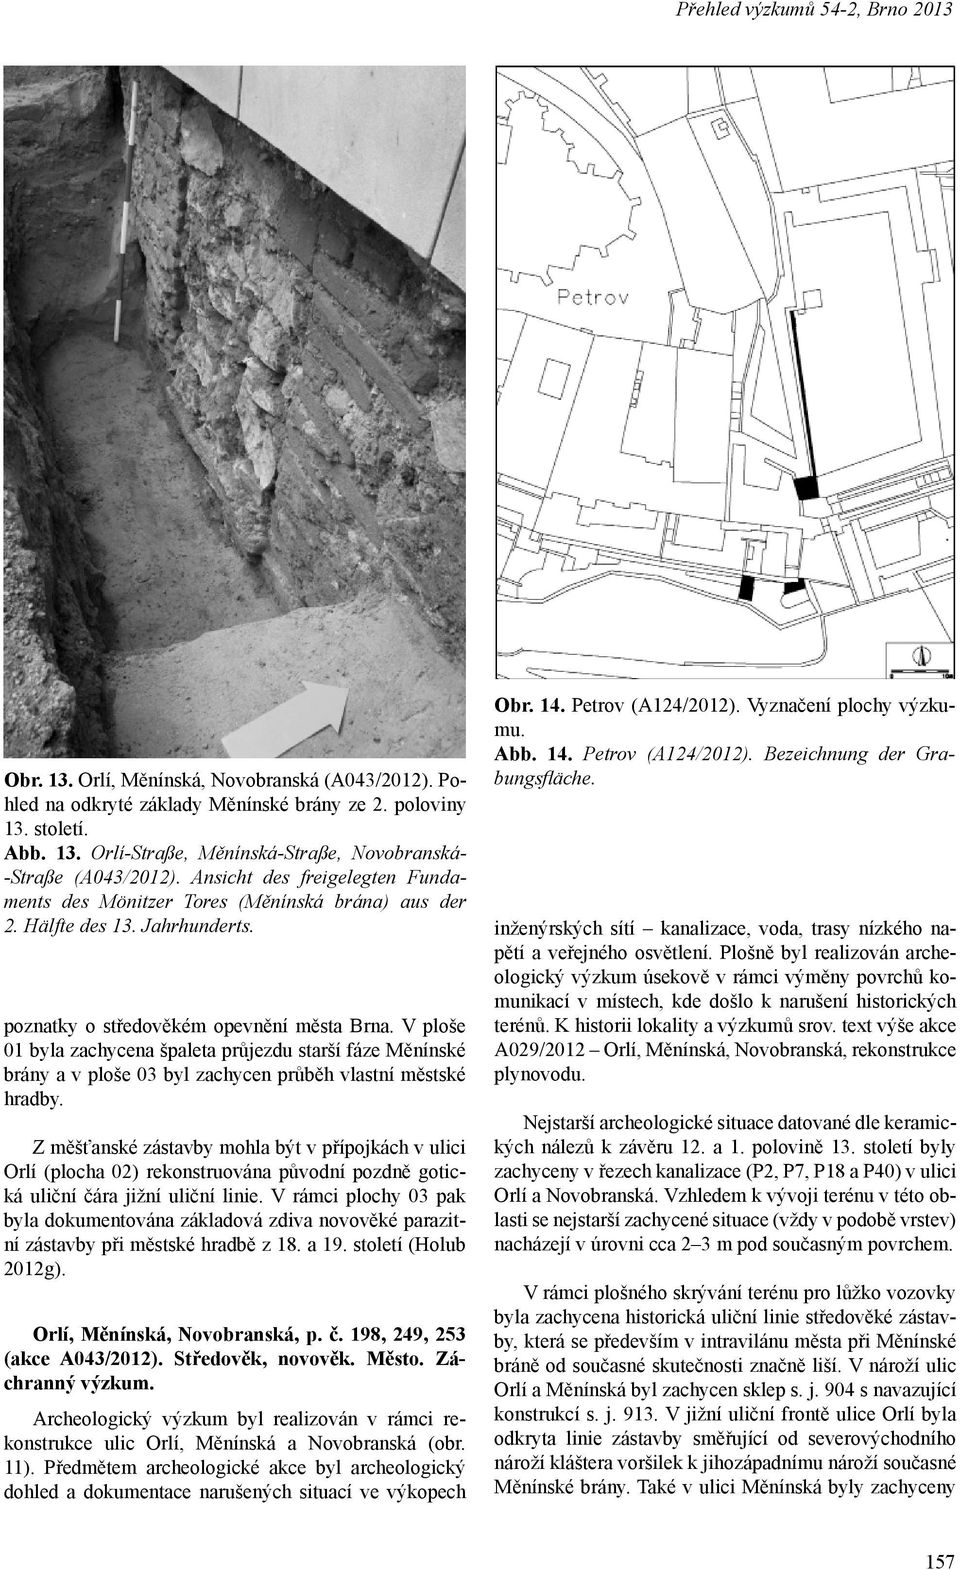 V ploše 01 byla zachycena špaleta průjezdu starší fáze Měnínské brány a v ploše 03 byl zachycen průběh vlastní městské hradby.